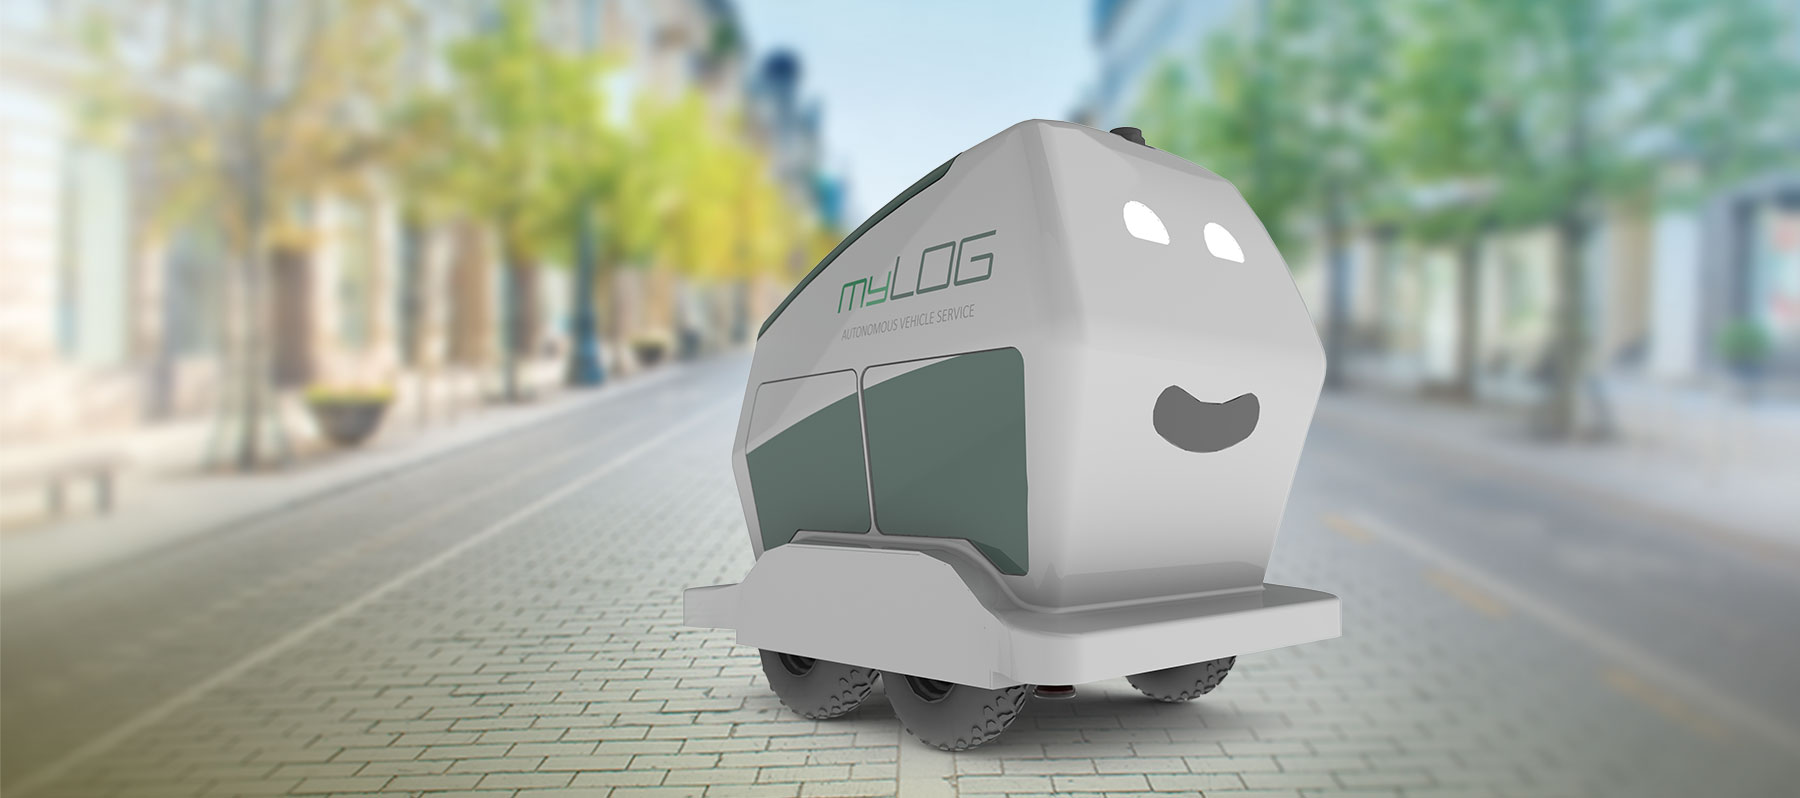 myLOG MOL Ein 5G-gesteuertes Logistiksystem zur Stabilisierung des Einzelhandels in Märkisch Oderland.